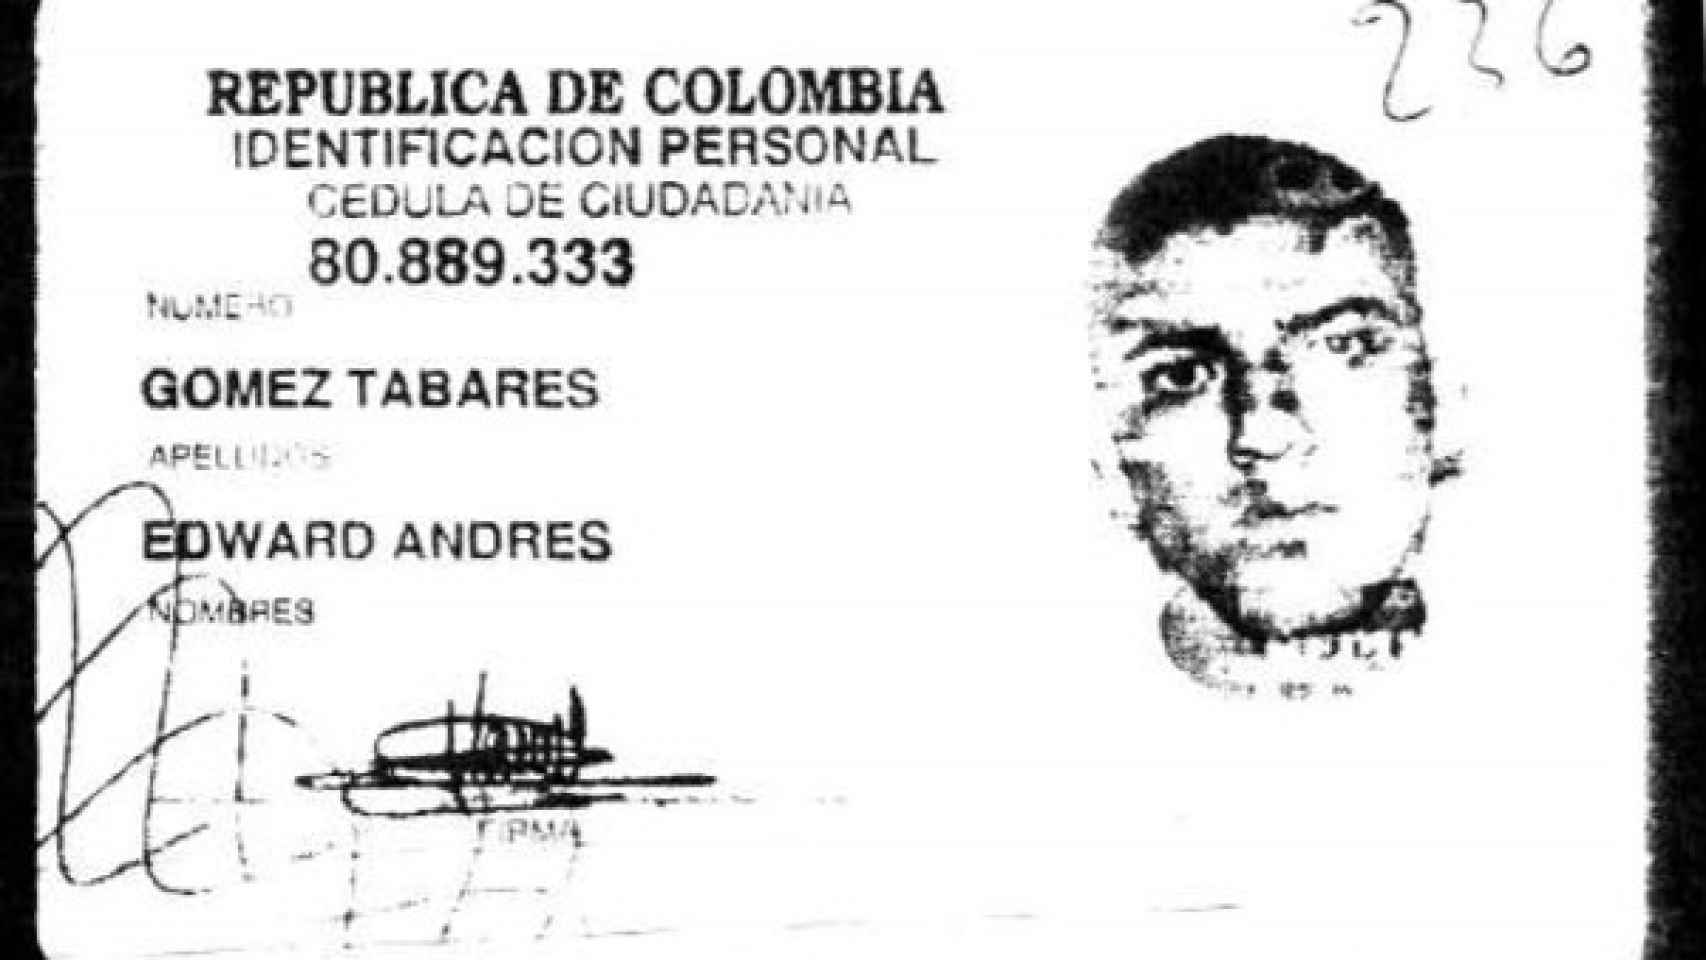 Edward Andrés Gómez Tabares es uno de los colombianos muertos a tiros por Manuel Alonso el 25 de abril de 2009.